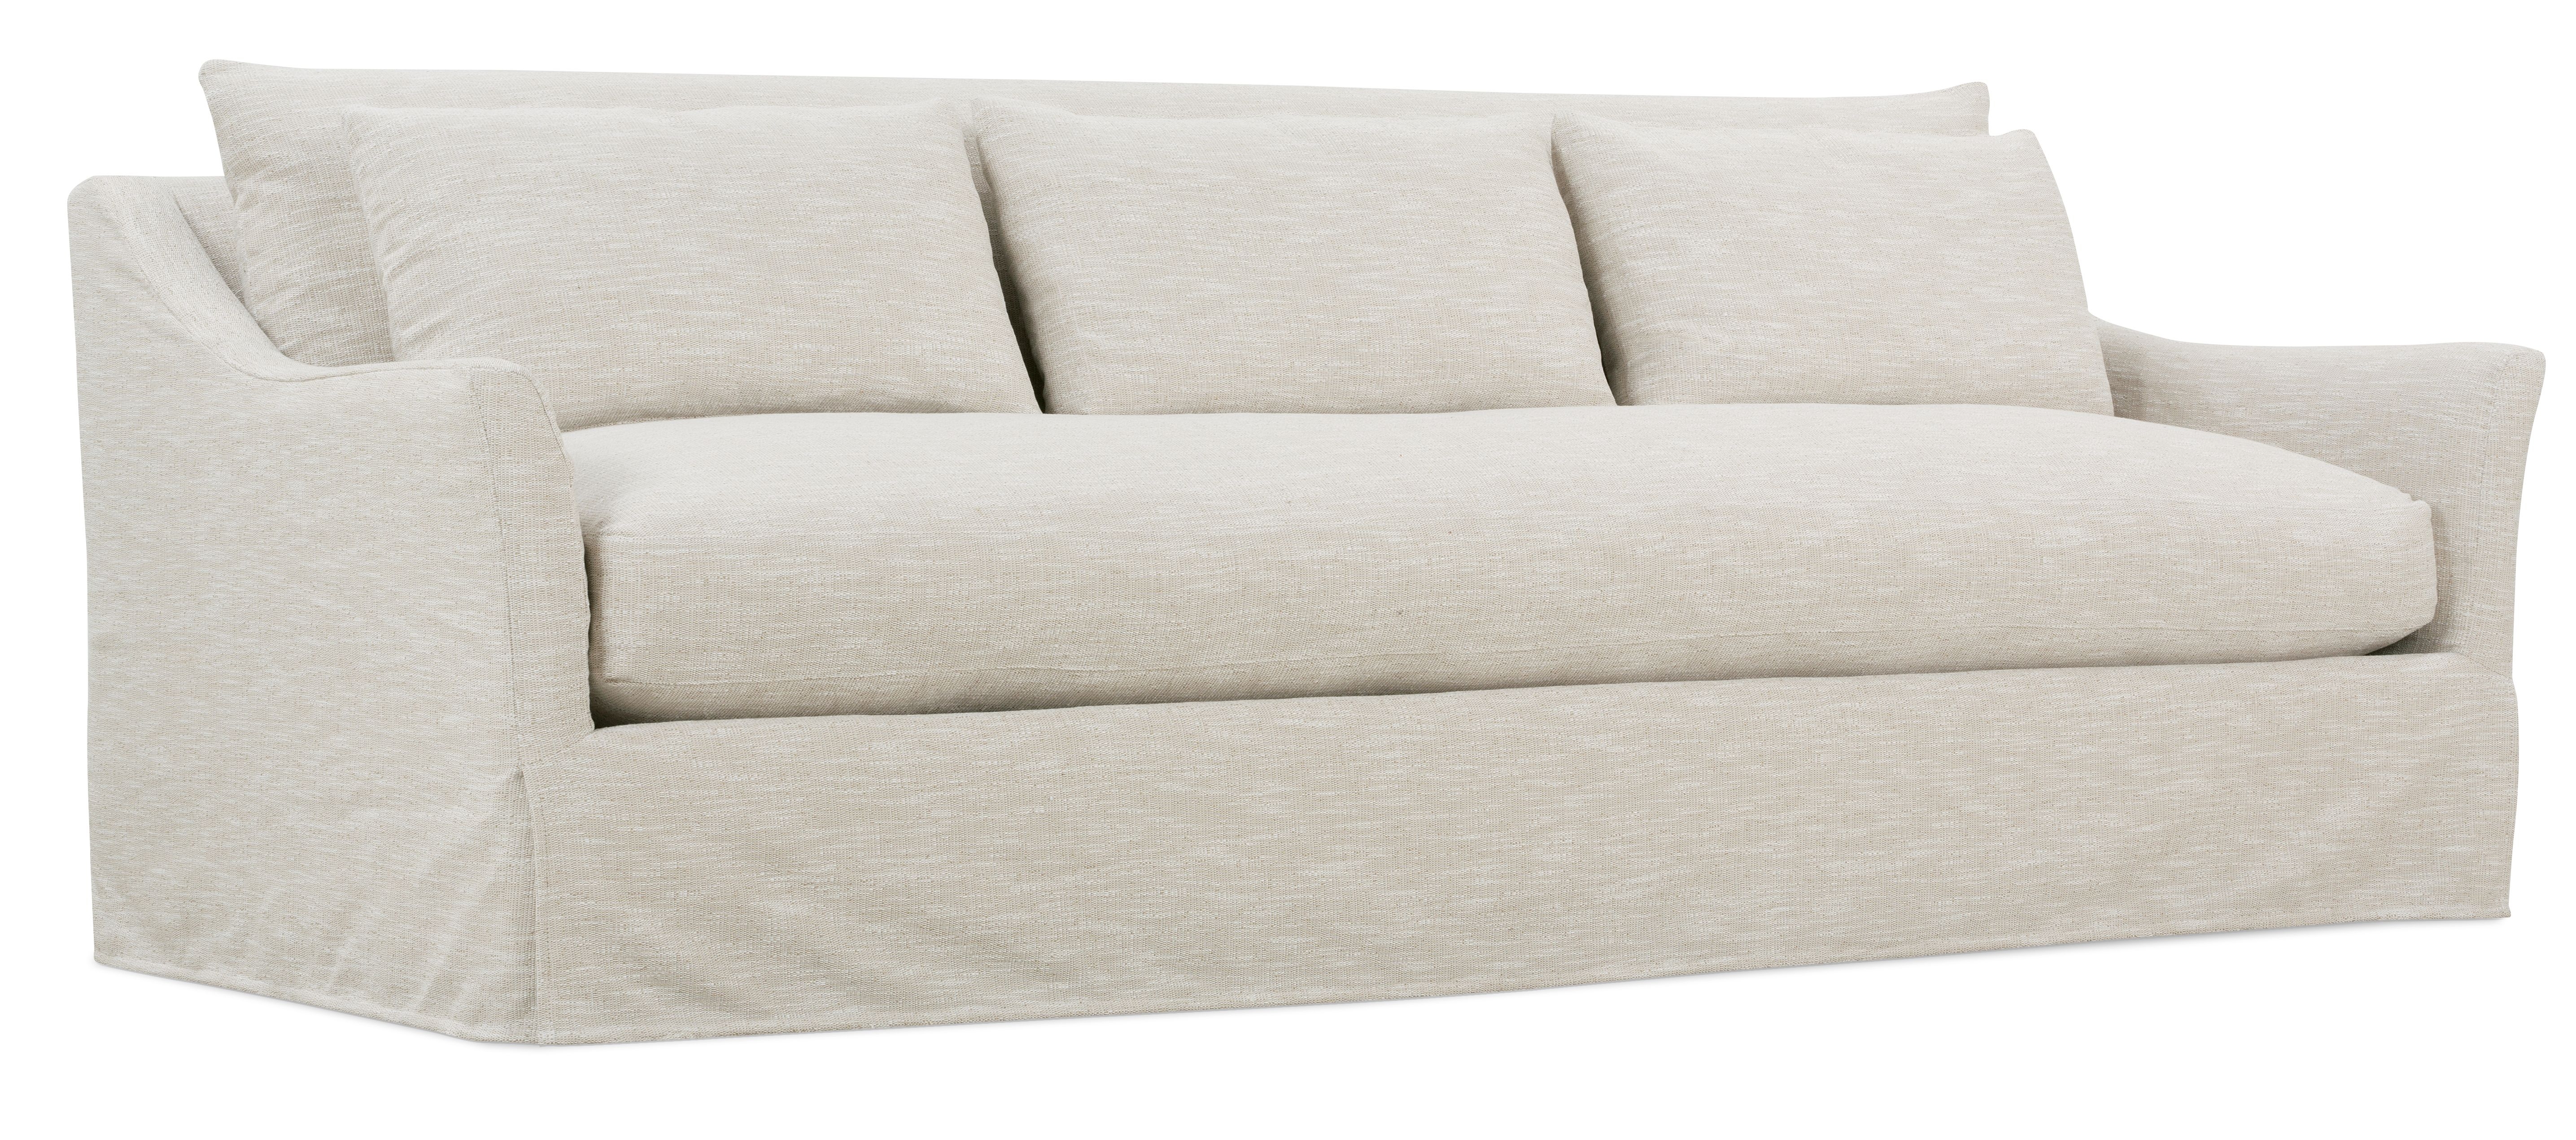 Moreau Slipcover Sofa, Bench Cushion, White, 95" - Image 1